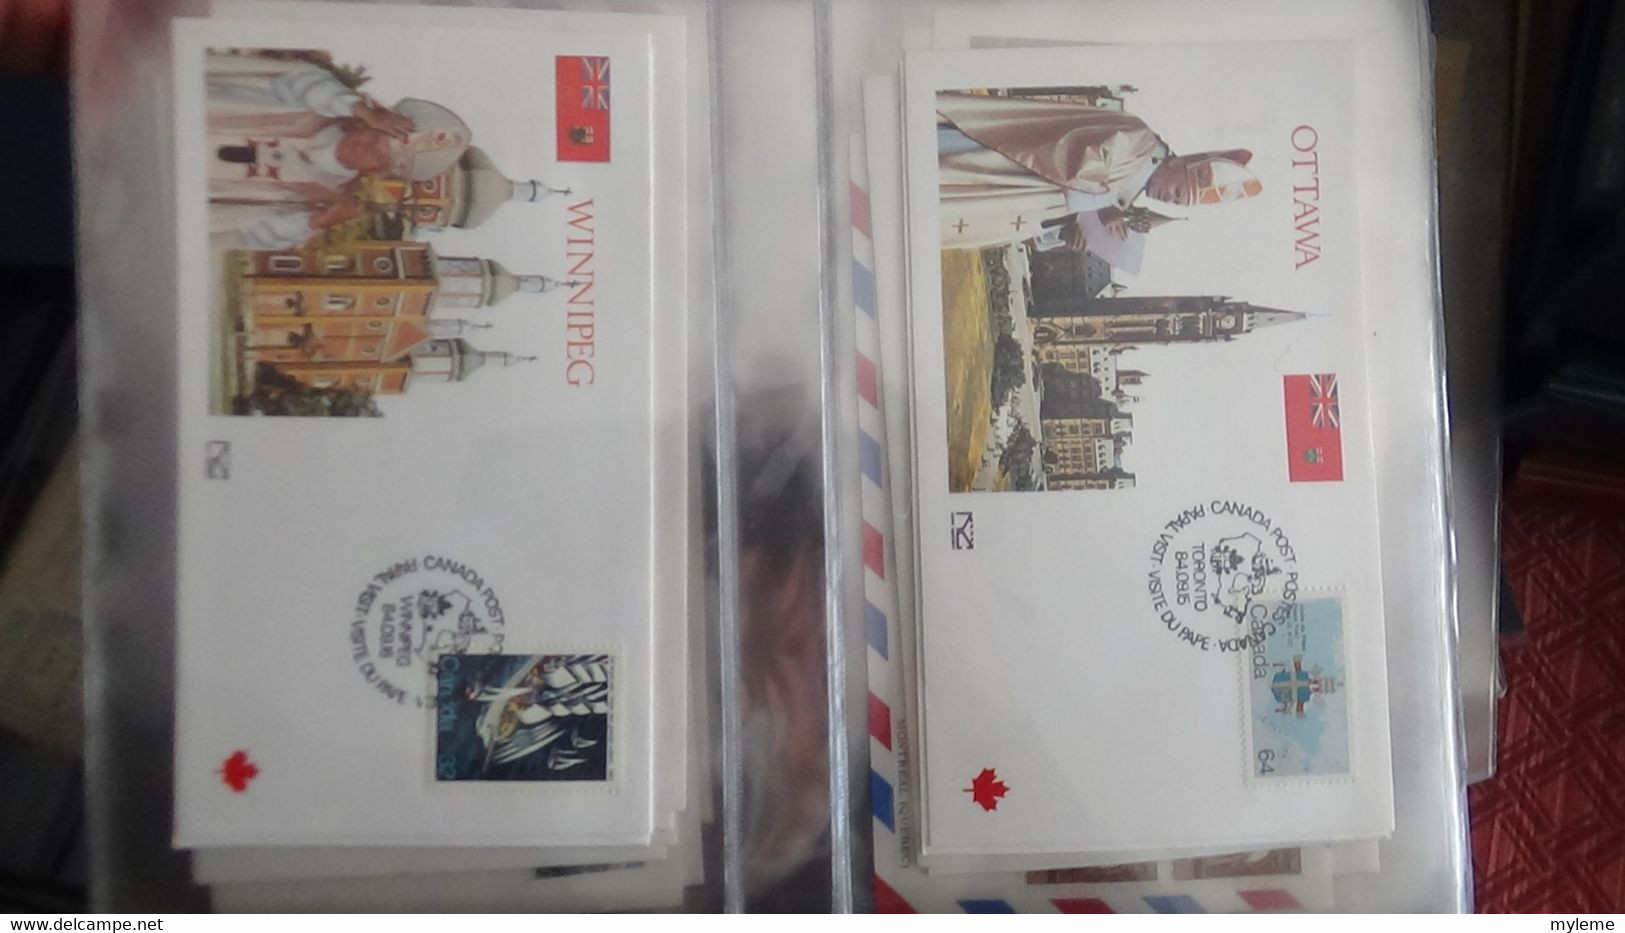 Z7 Belle collection de 132 enveloppes 1er jour du voyage de sa souveraineté le Pape Classeur 2 de 6 ...  A saisir !!!